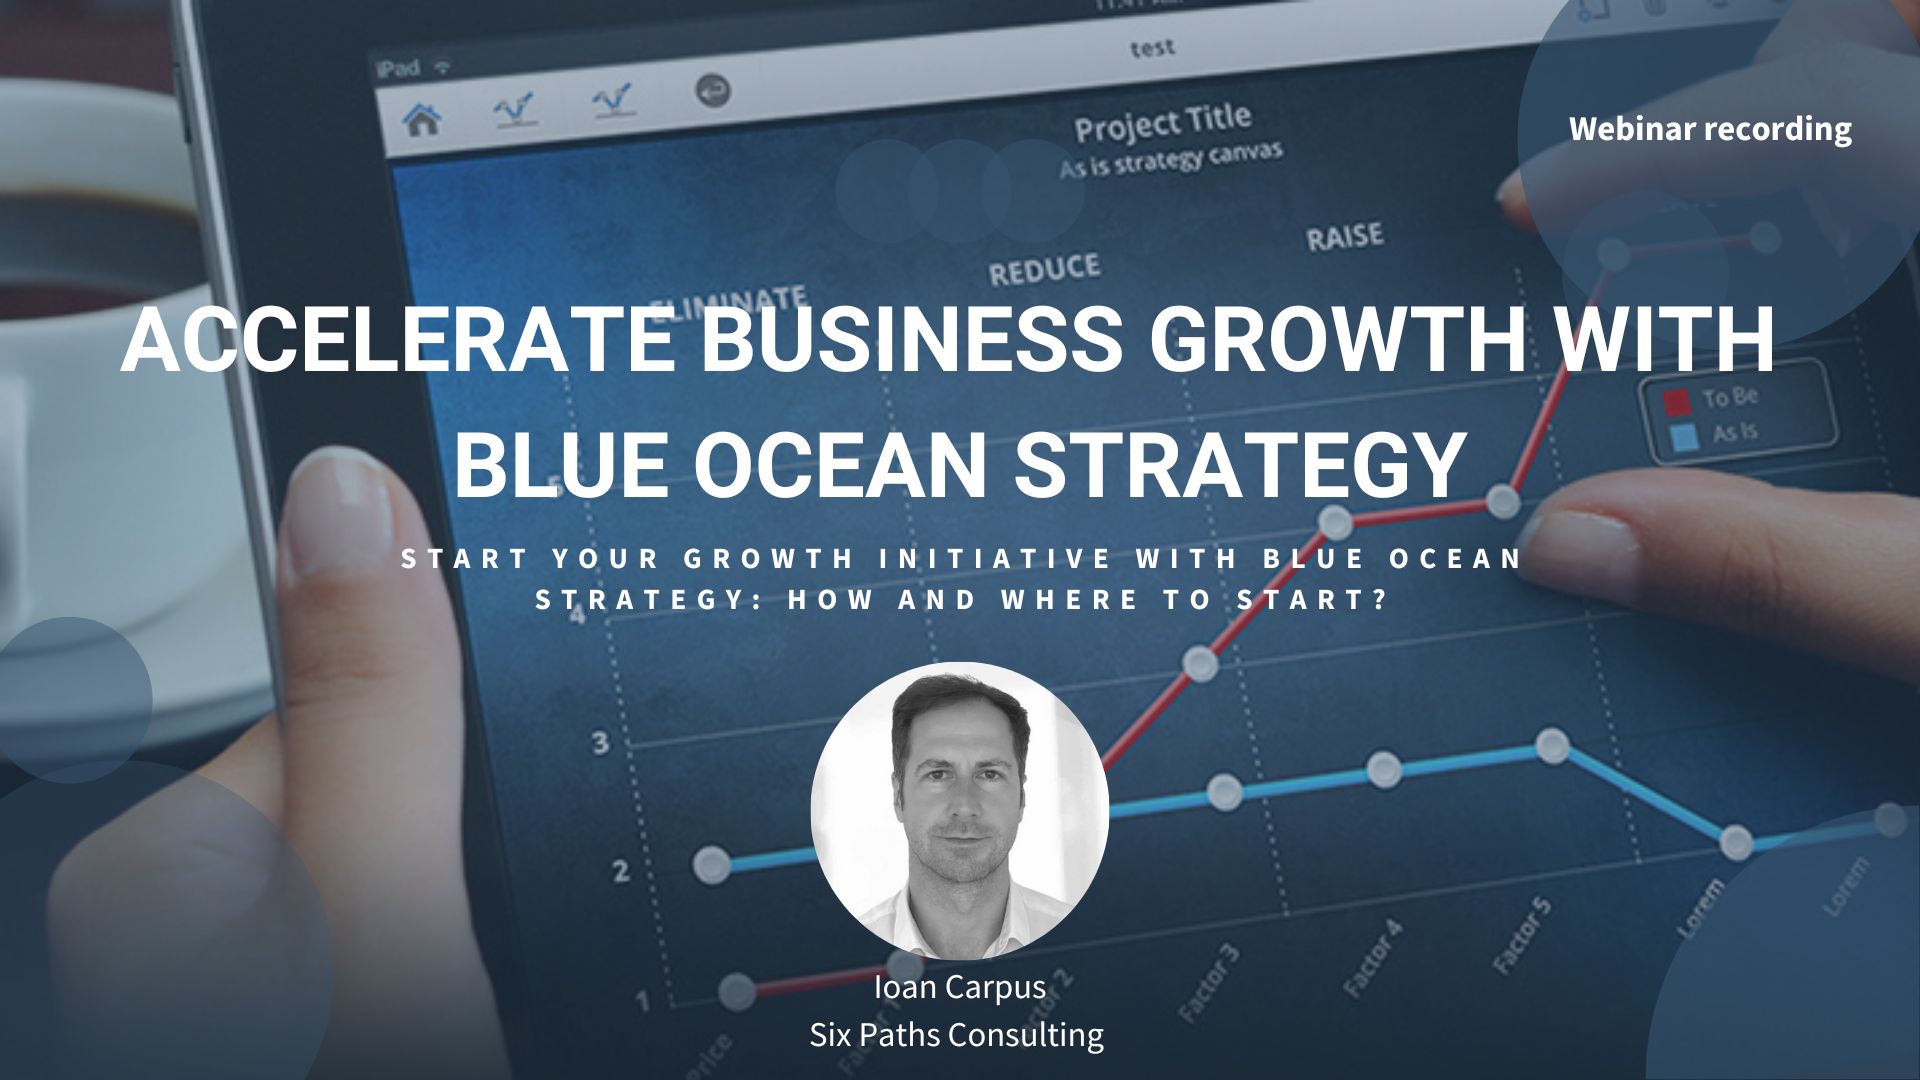 Blue Ocean Strategy webinar